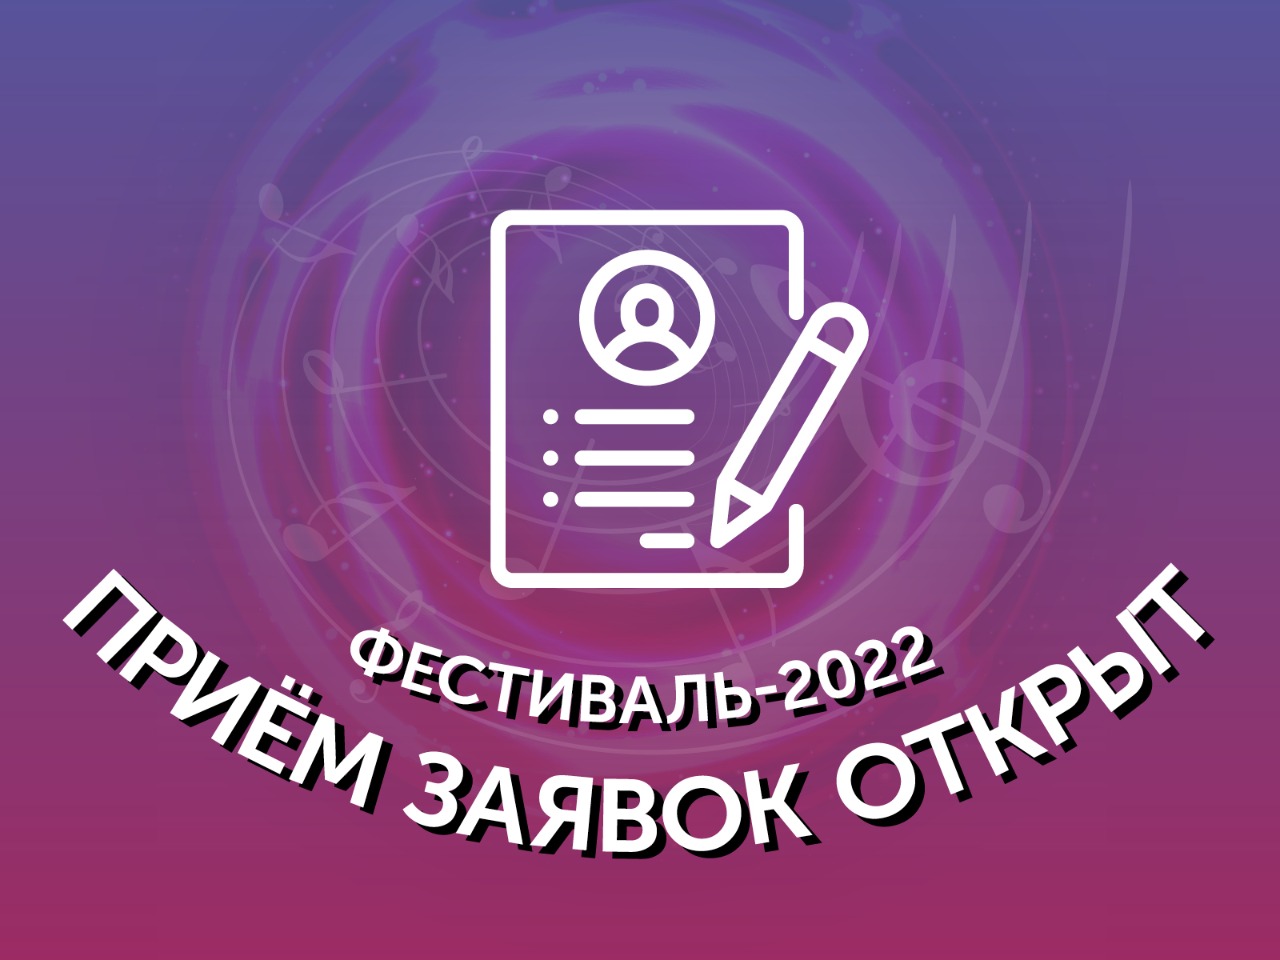 Мы открываем прием заявок на участие в Фестивале-2022